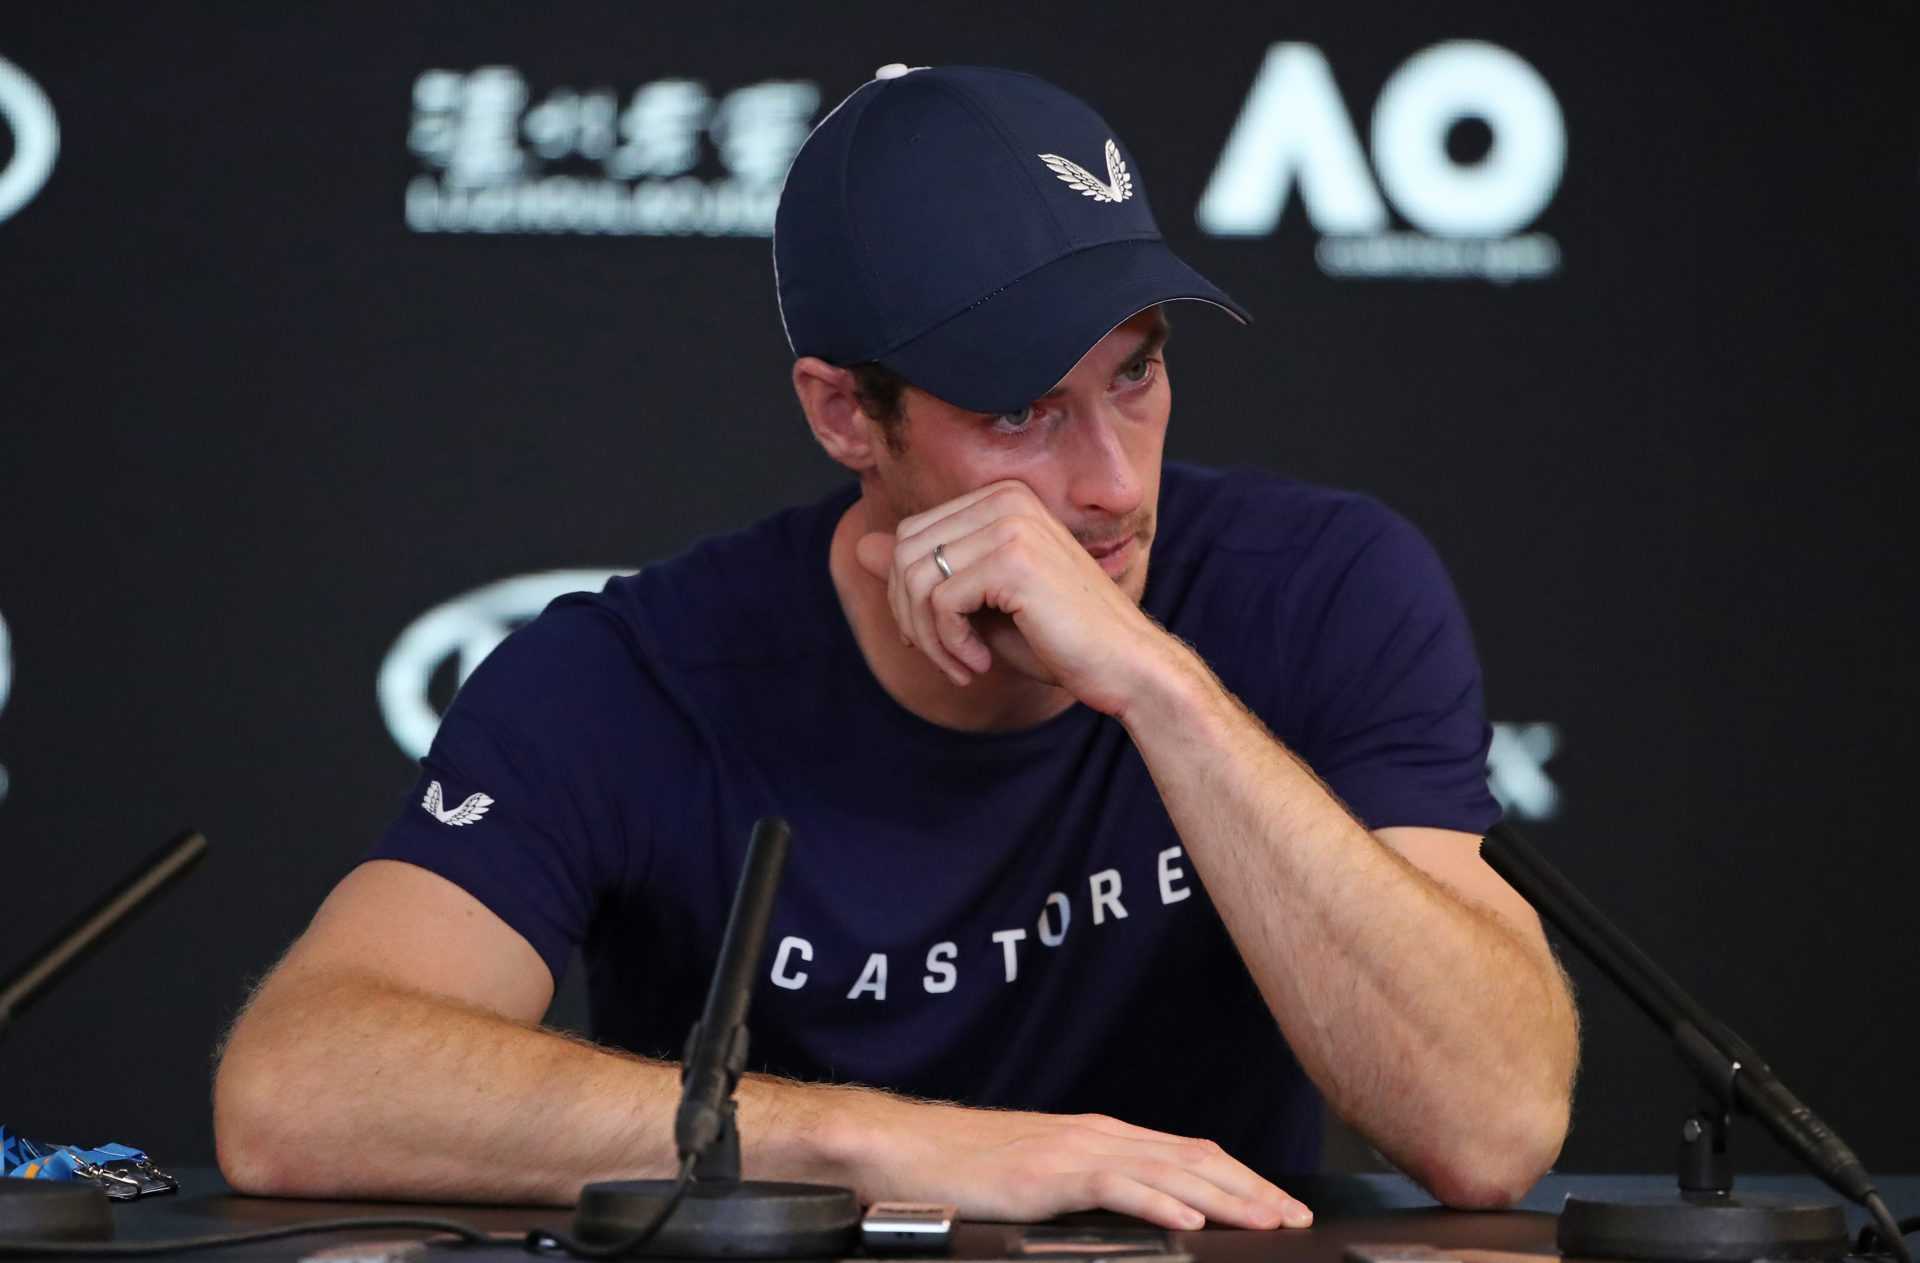 "Toujours capable de jouer au grand tennis": la légende du tennis fait des pronostics audacieux pour Andy Murray